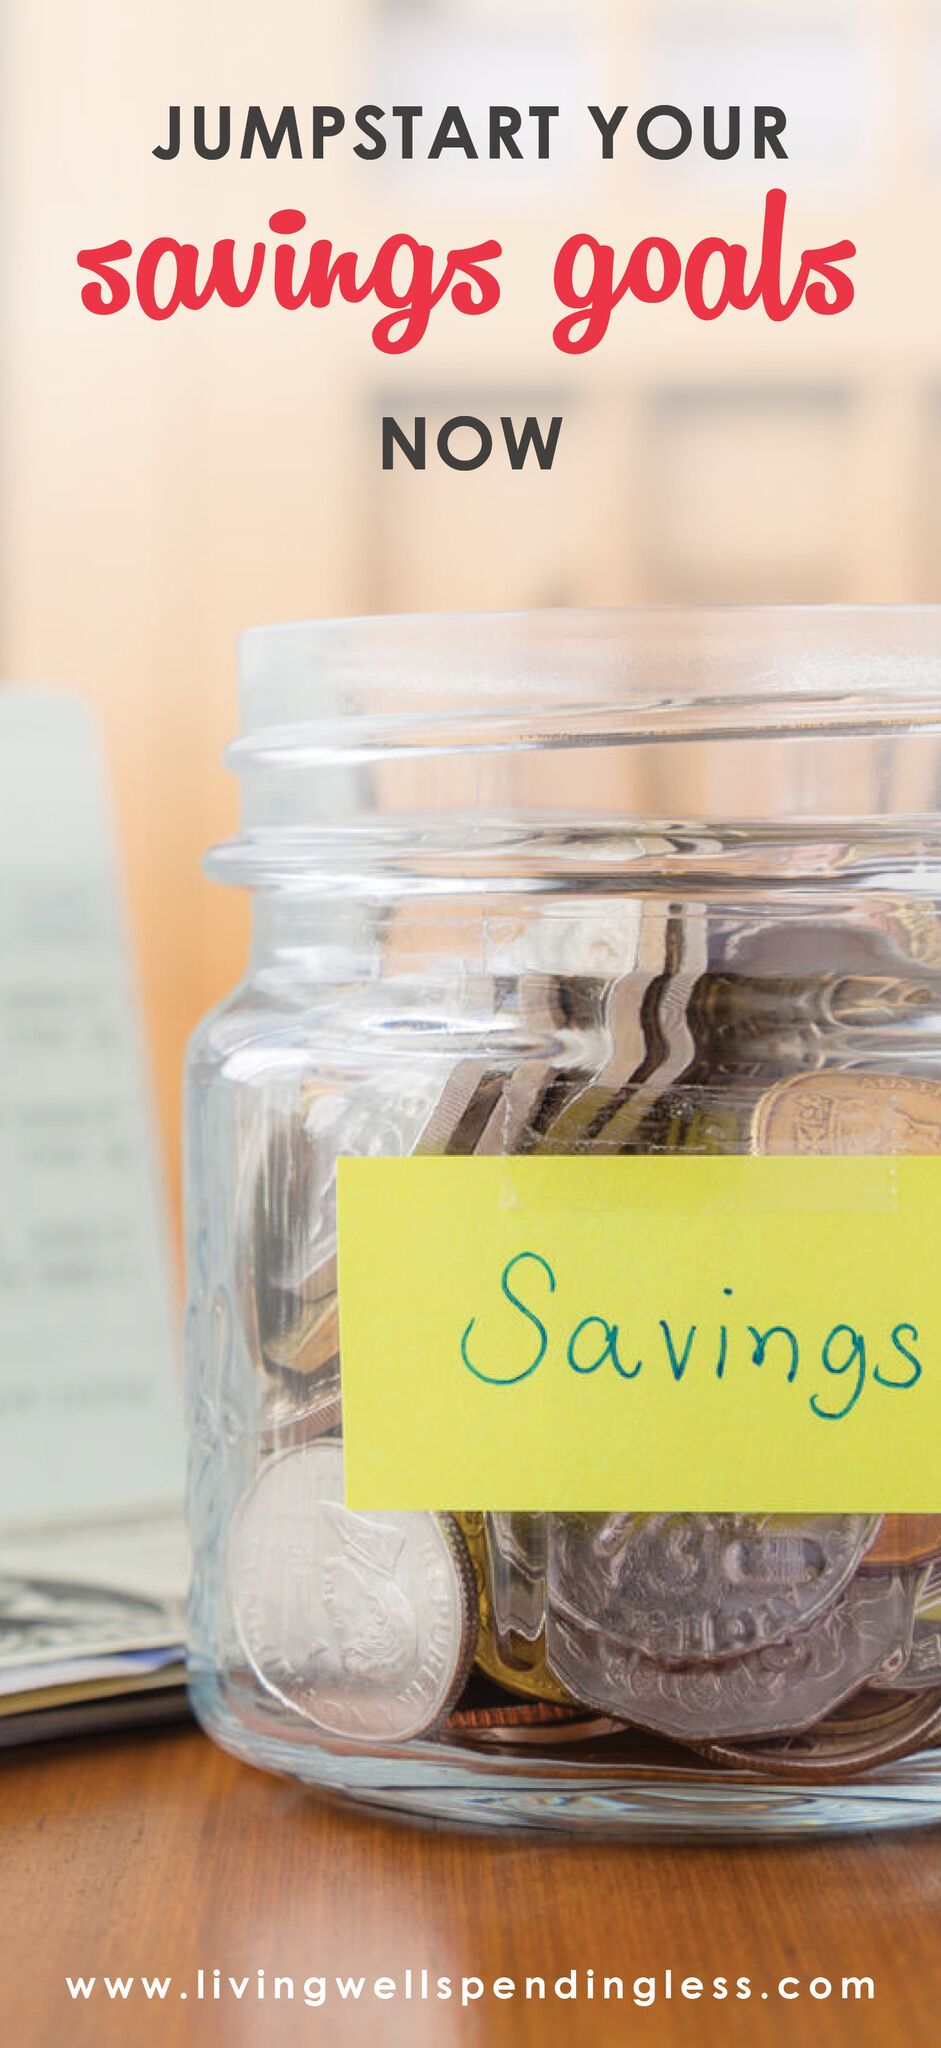 Jumpstart Your Savings Goals Now